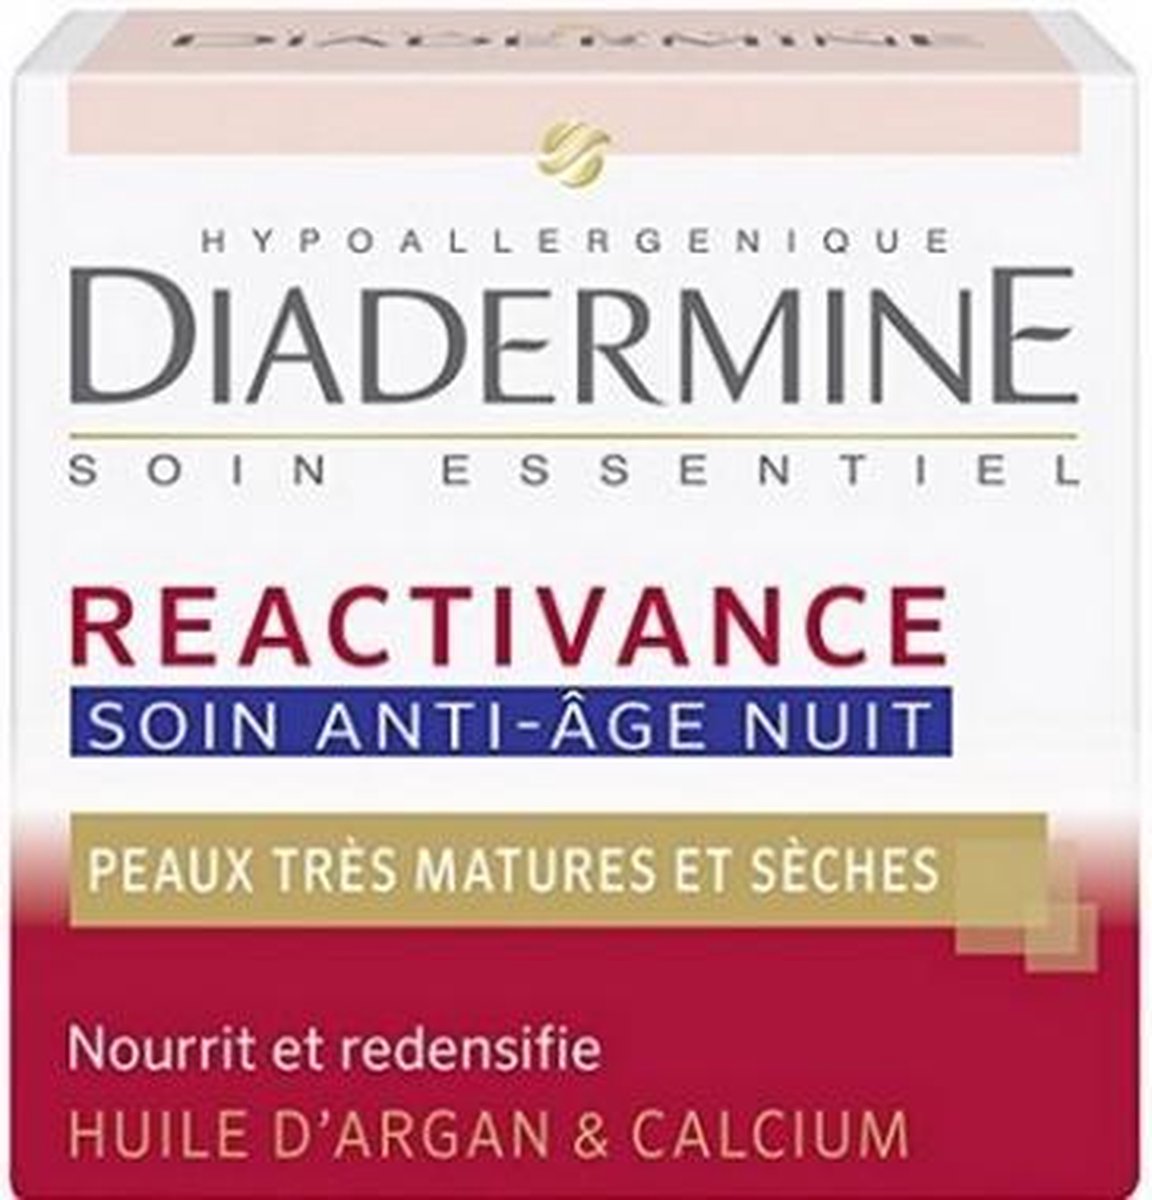 Diadermine Gezichtscreme – Reactivance Nacht , 50 ml - 1 stuks